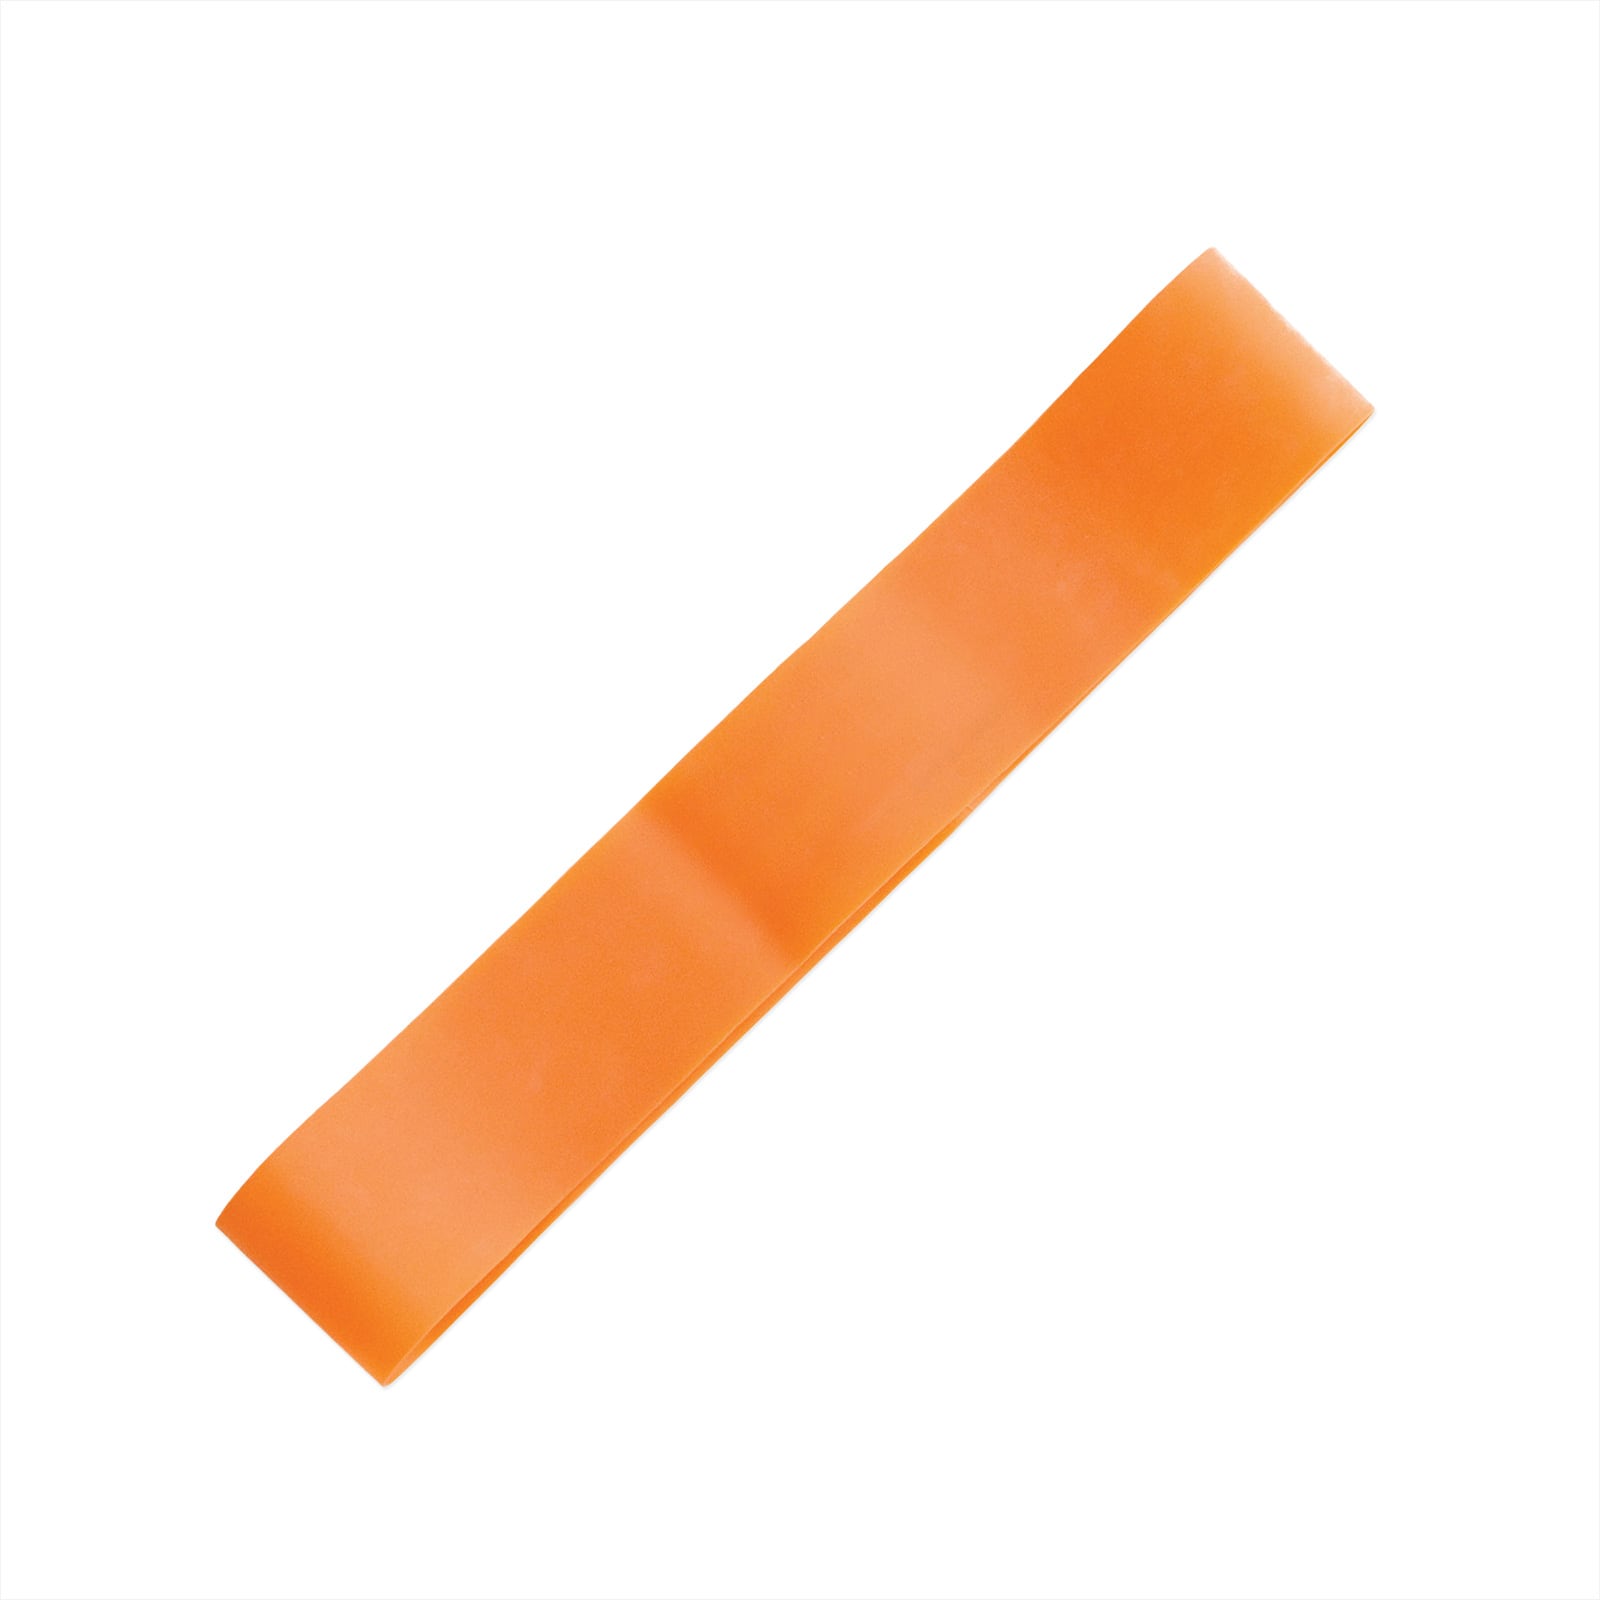  Mini bande elastique 25x5.4cm Orange - Faible